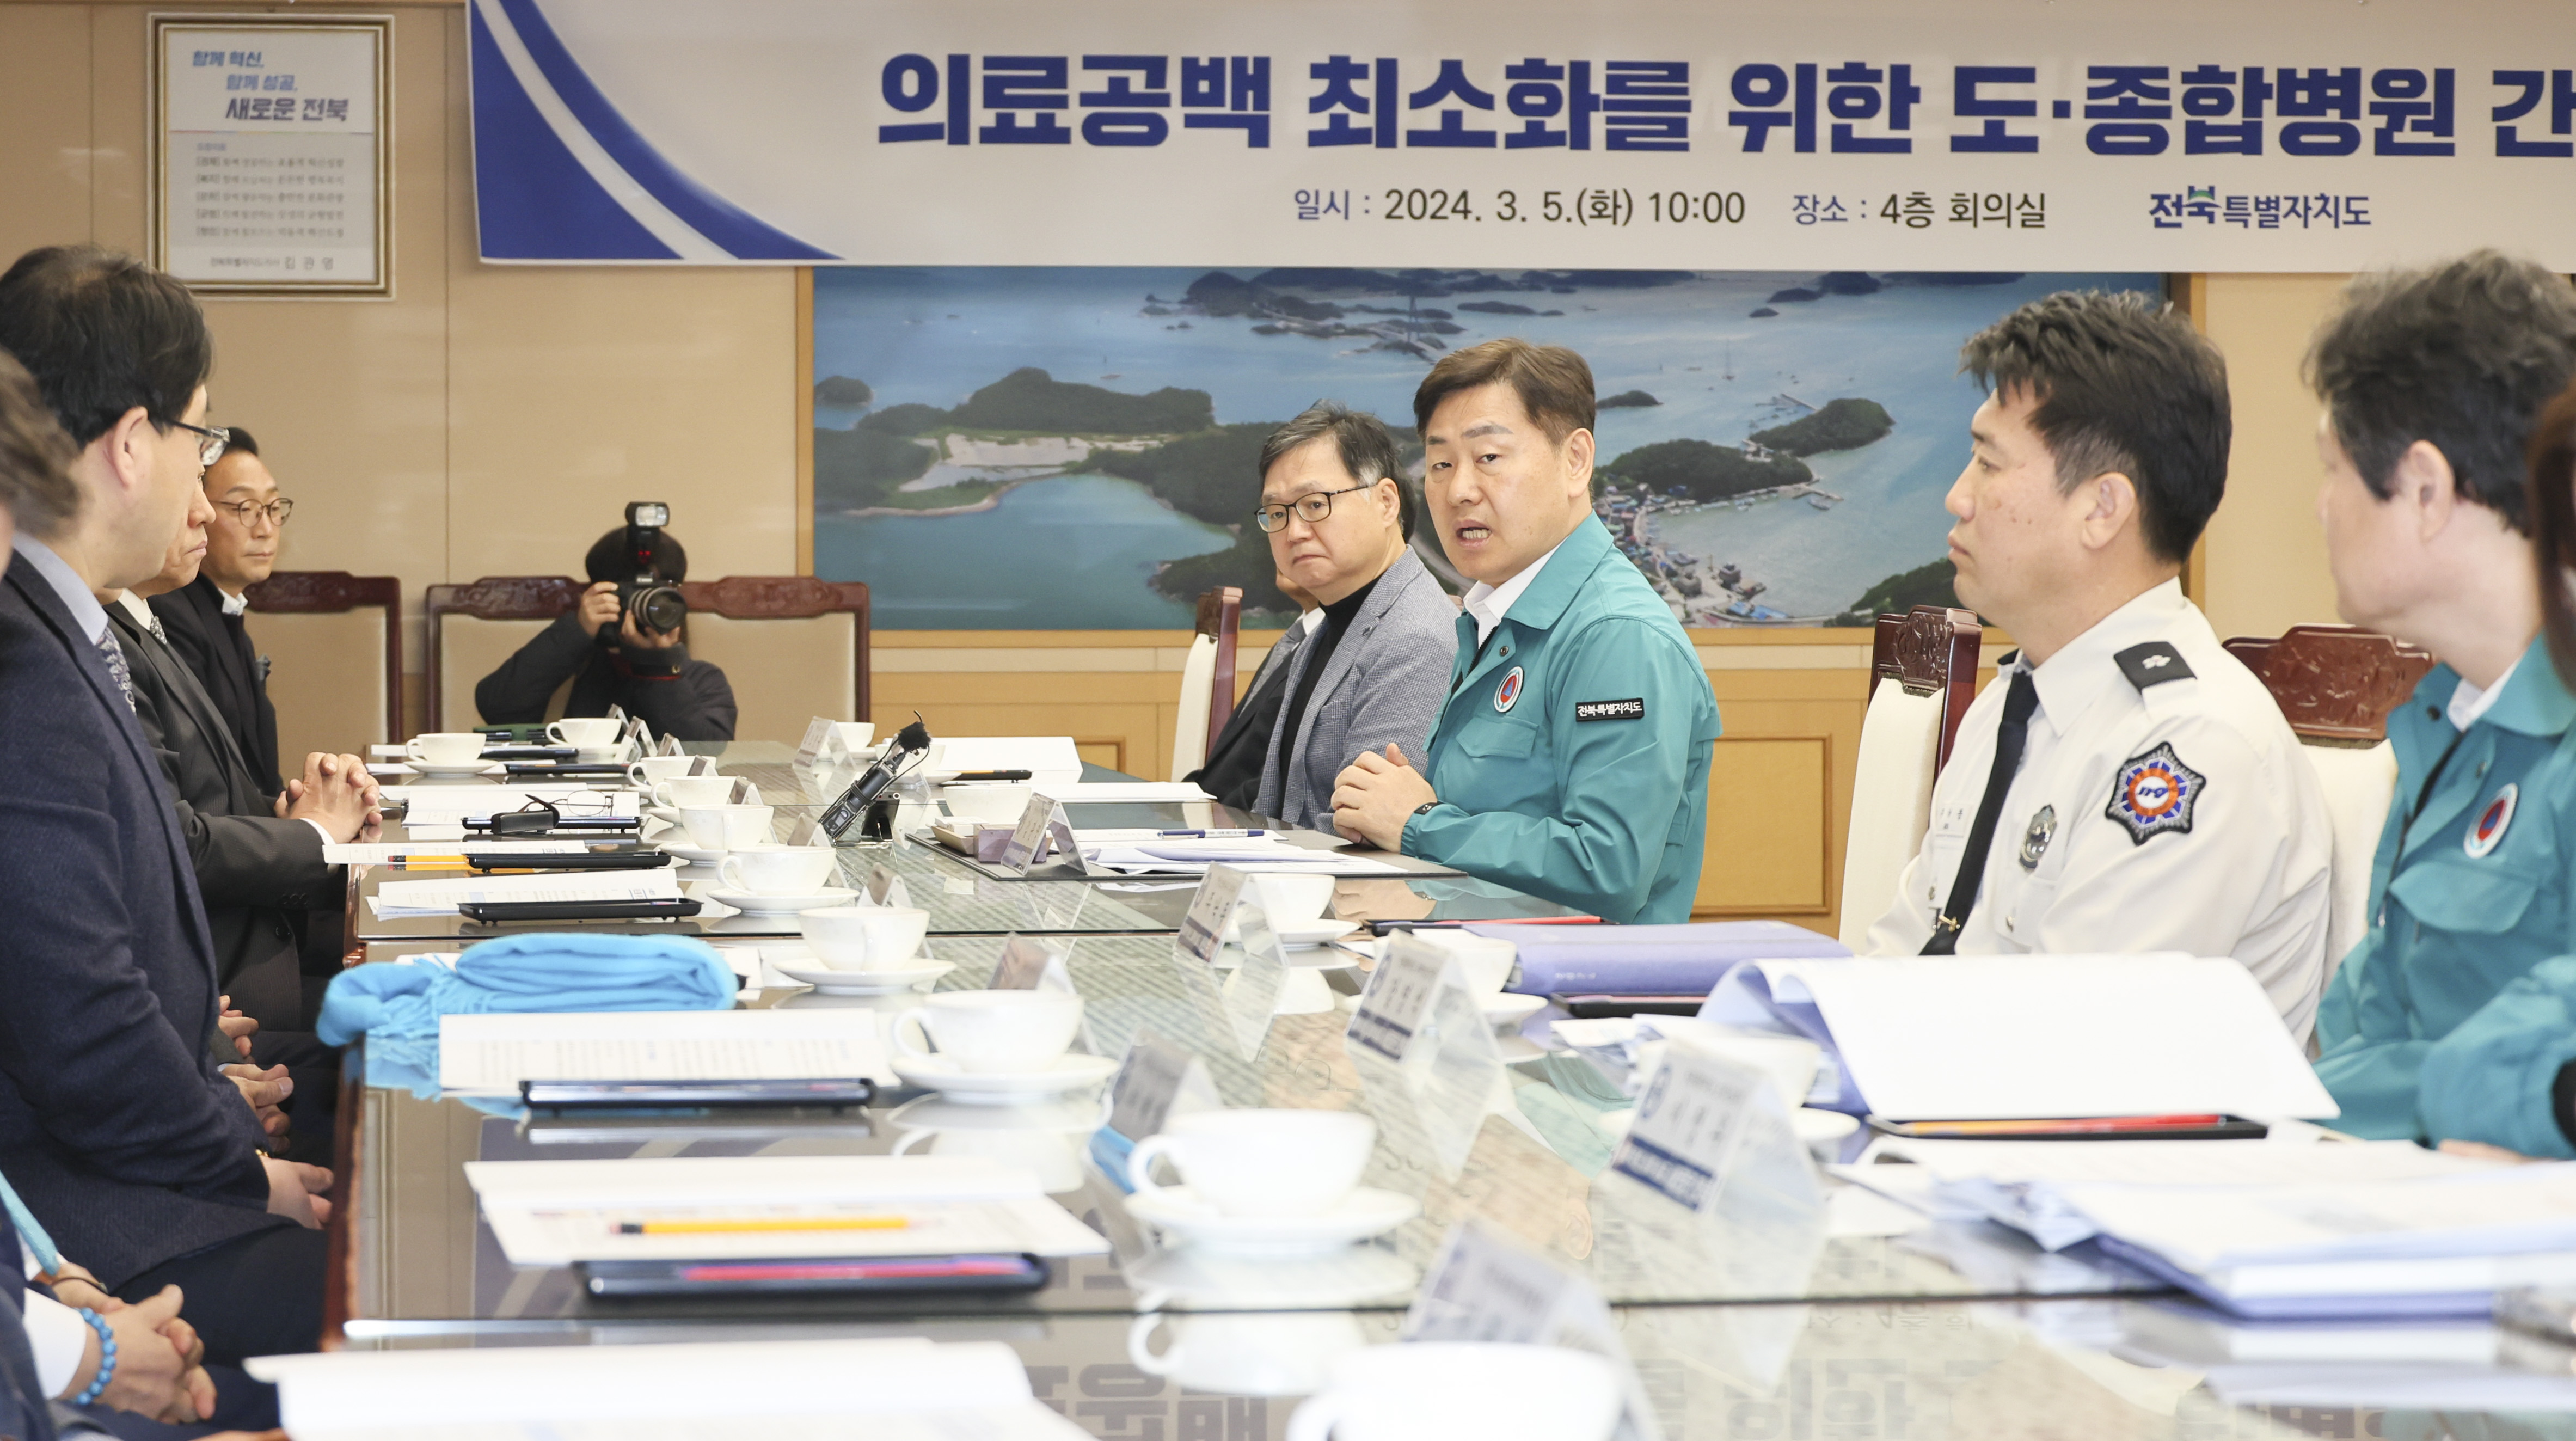 Tỉnh tự trị đặc biệt Jeonbuk, thảo luận với các bệnh viện đa khoa trong tỉnh về việc giảm thiểu khoảng trống điều trị